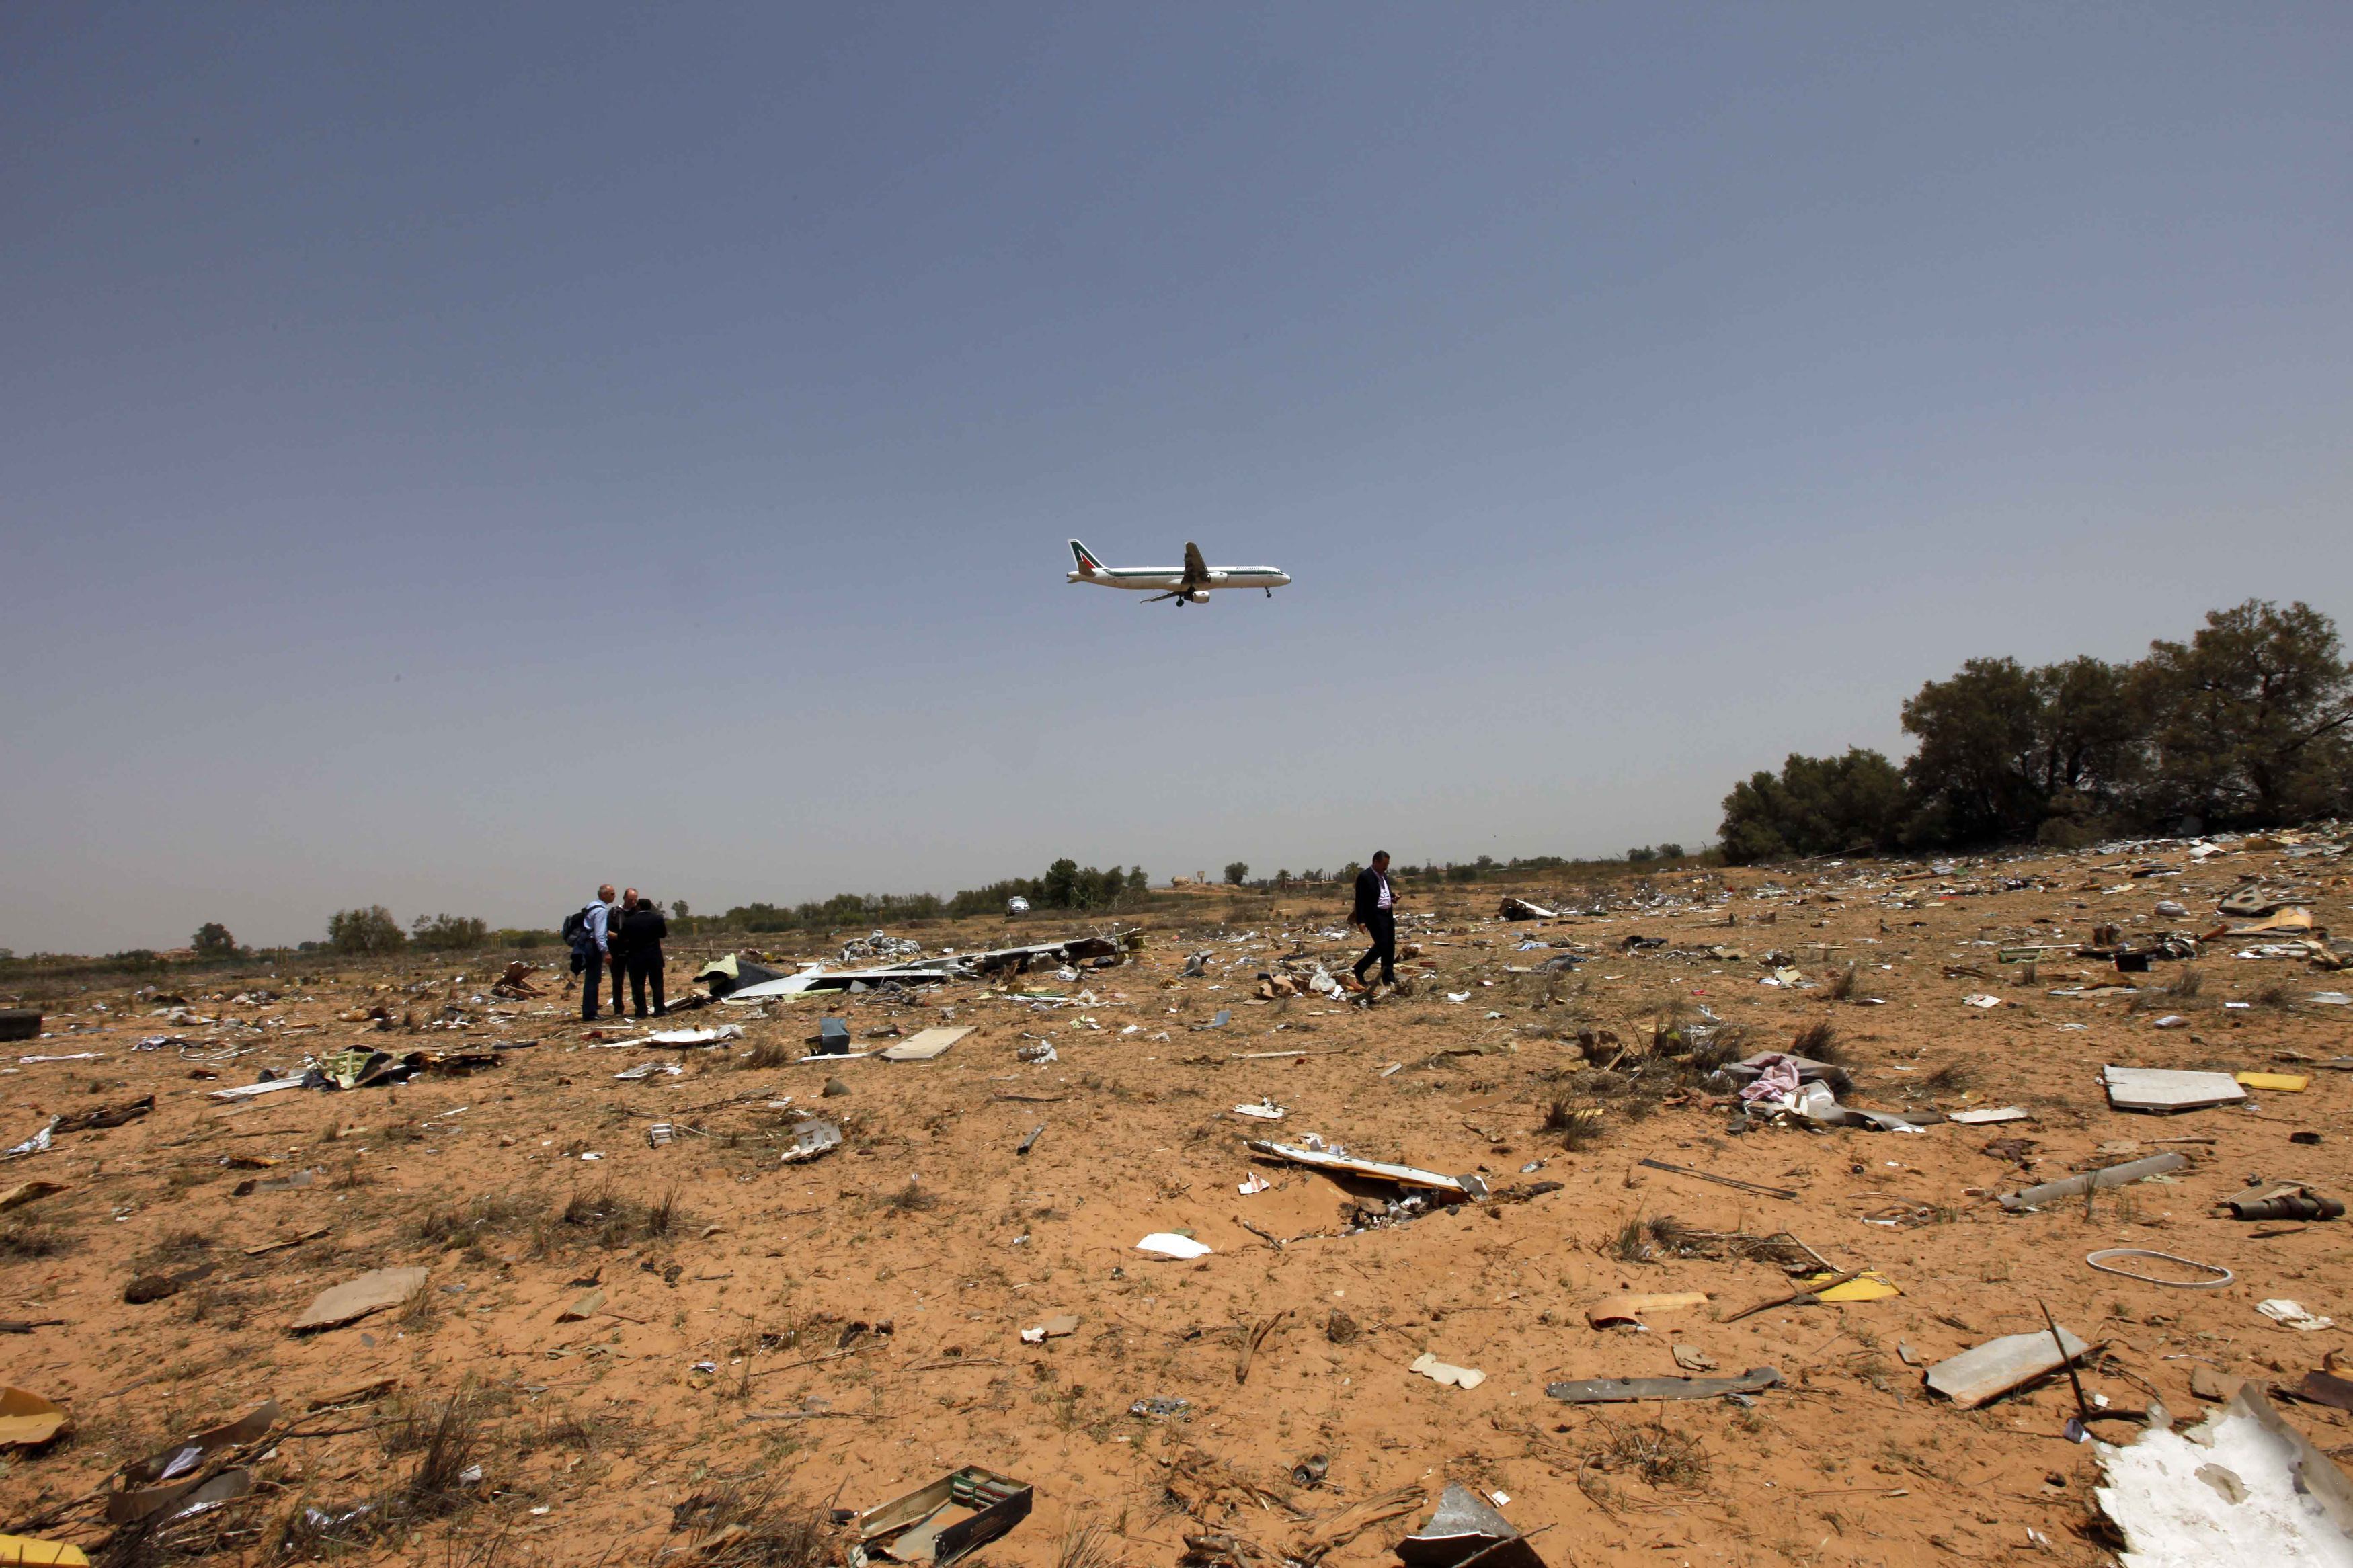 Δεν υπήρξε τεχνική βλάβη στο αεροσκάφος που έπεσε στη Λιβύη